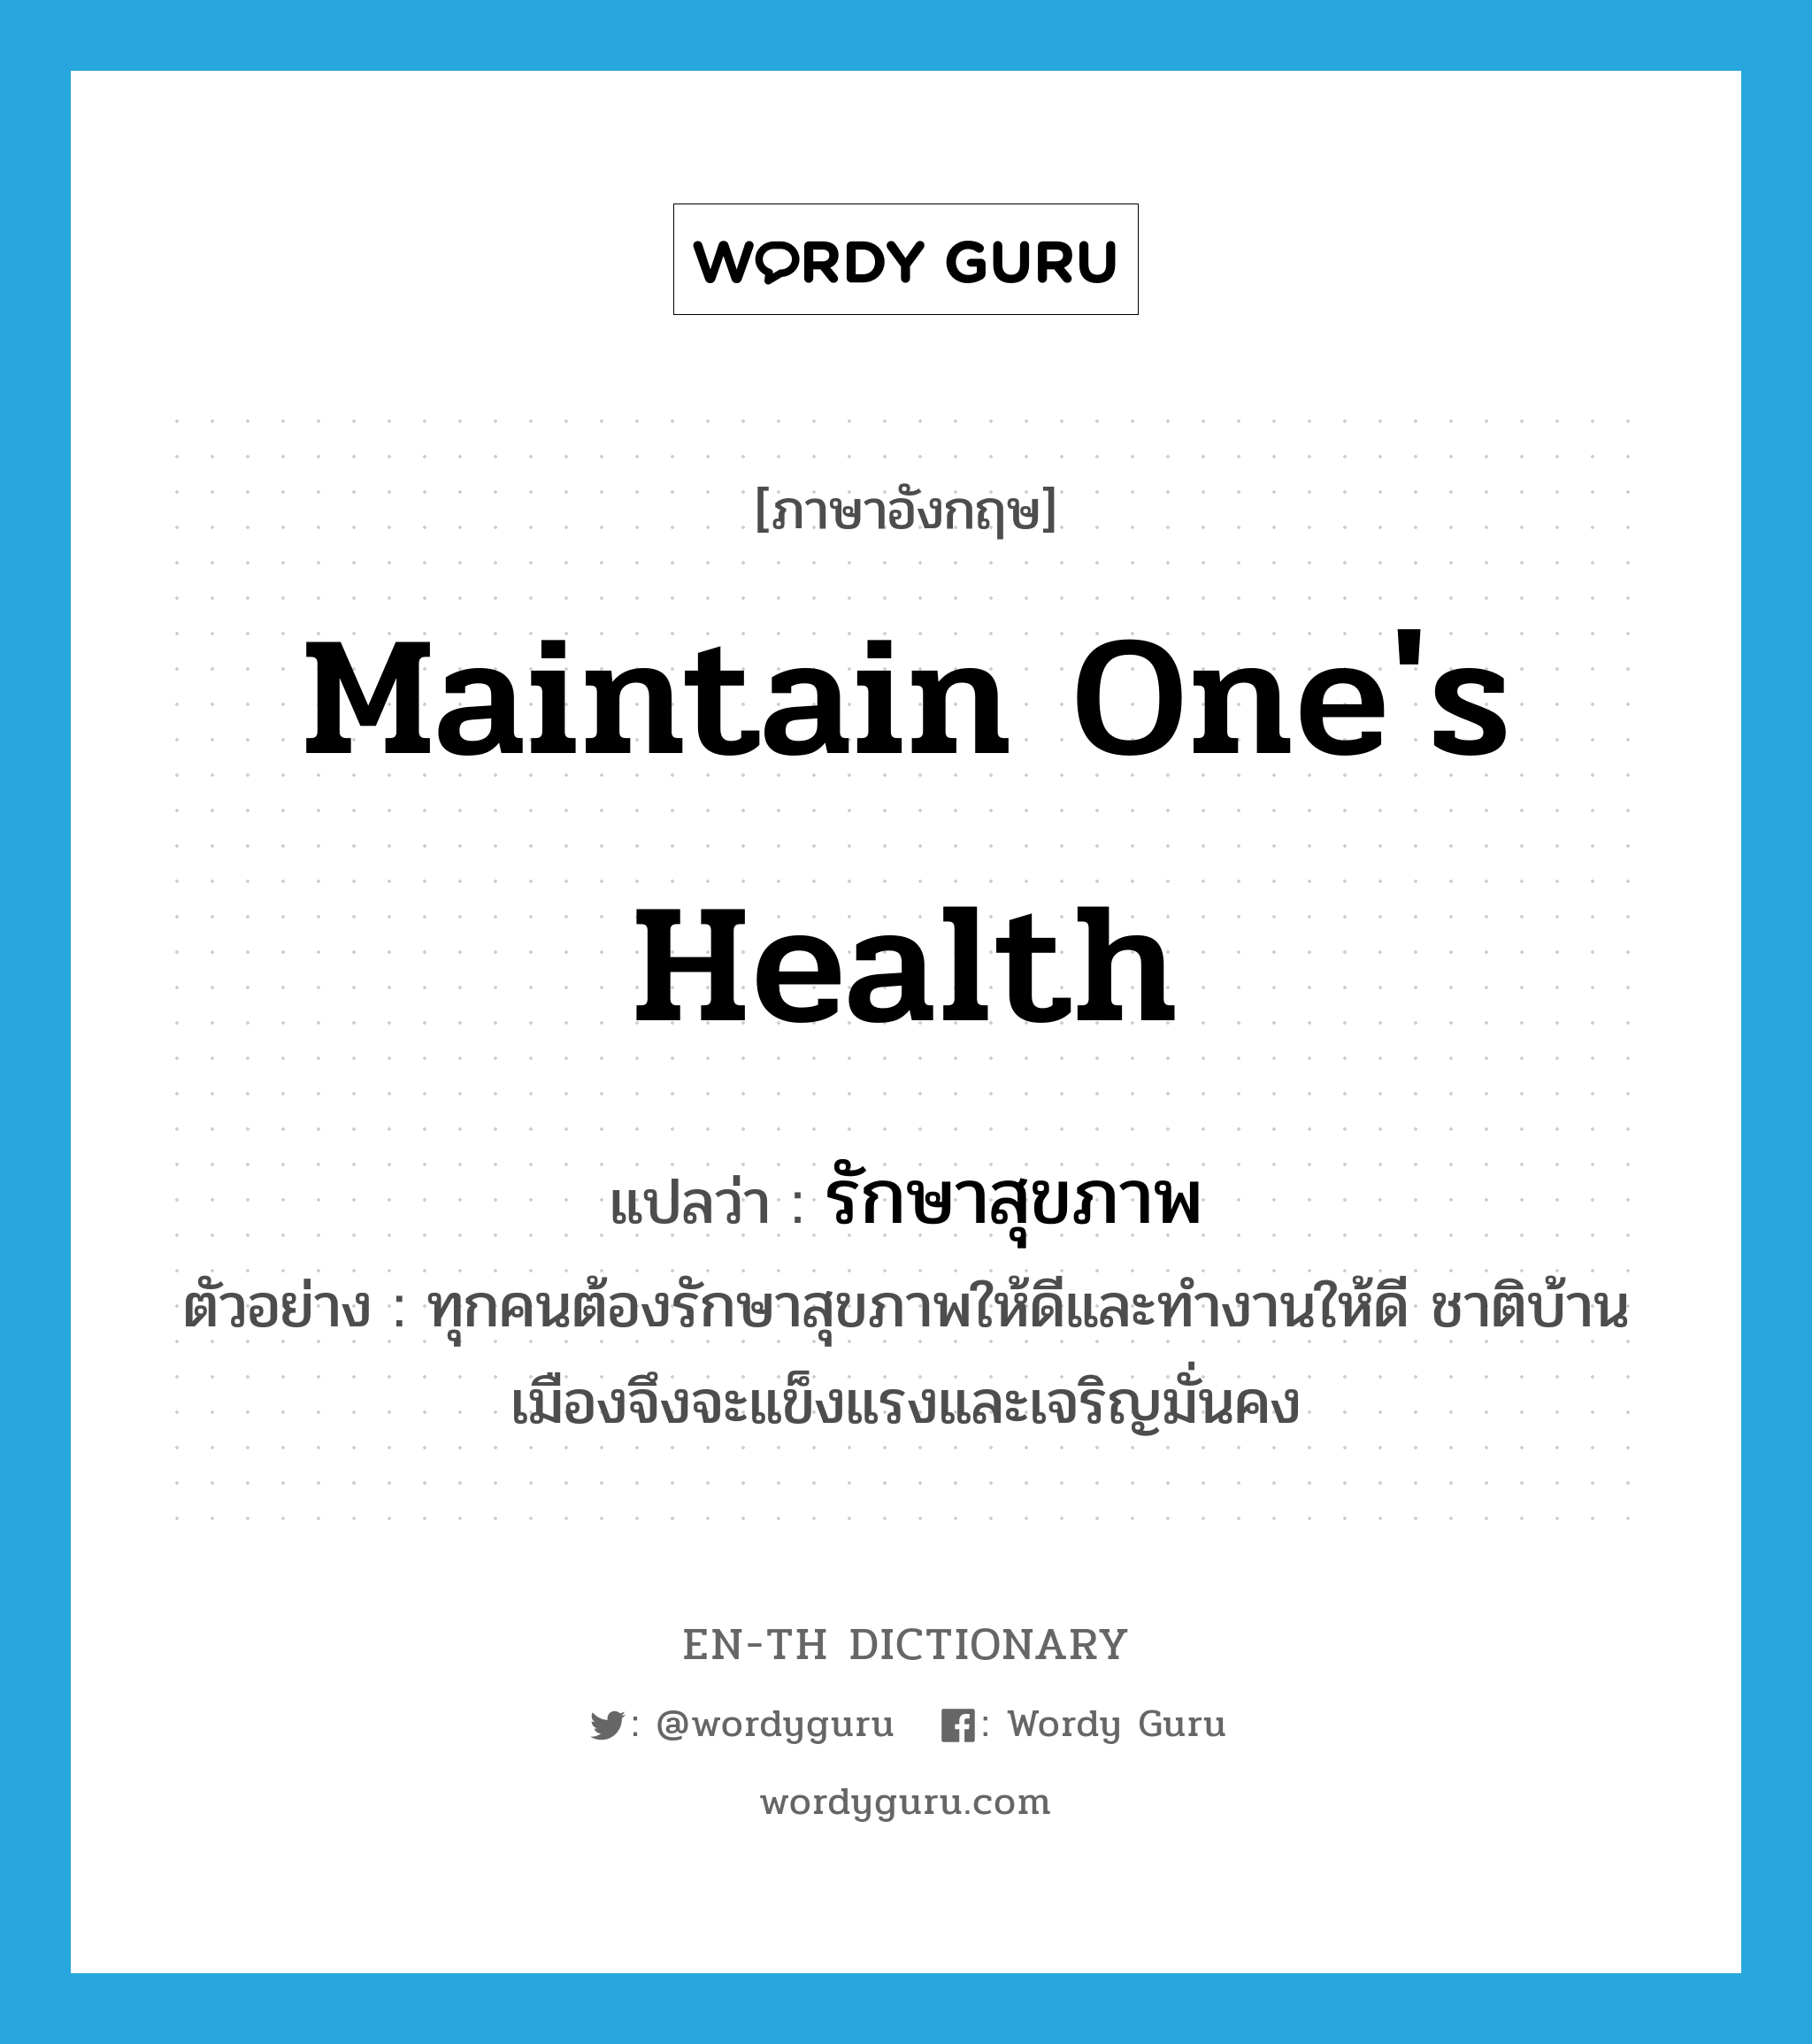 maintain one's health แปลว่า?, คำศัพท์ภาษาอังกฤษ maintain one's health แปลว่า รักษาสุขภาพ ประเภท V ตัวอย่าง ทุกคนต้องรักษาสุขภาพให้ดีและทำงานให้ดี ชาติบ้านเมืองจึงจะแข็งแรงและเจริญมั่นคง หมวด V